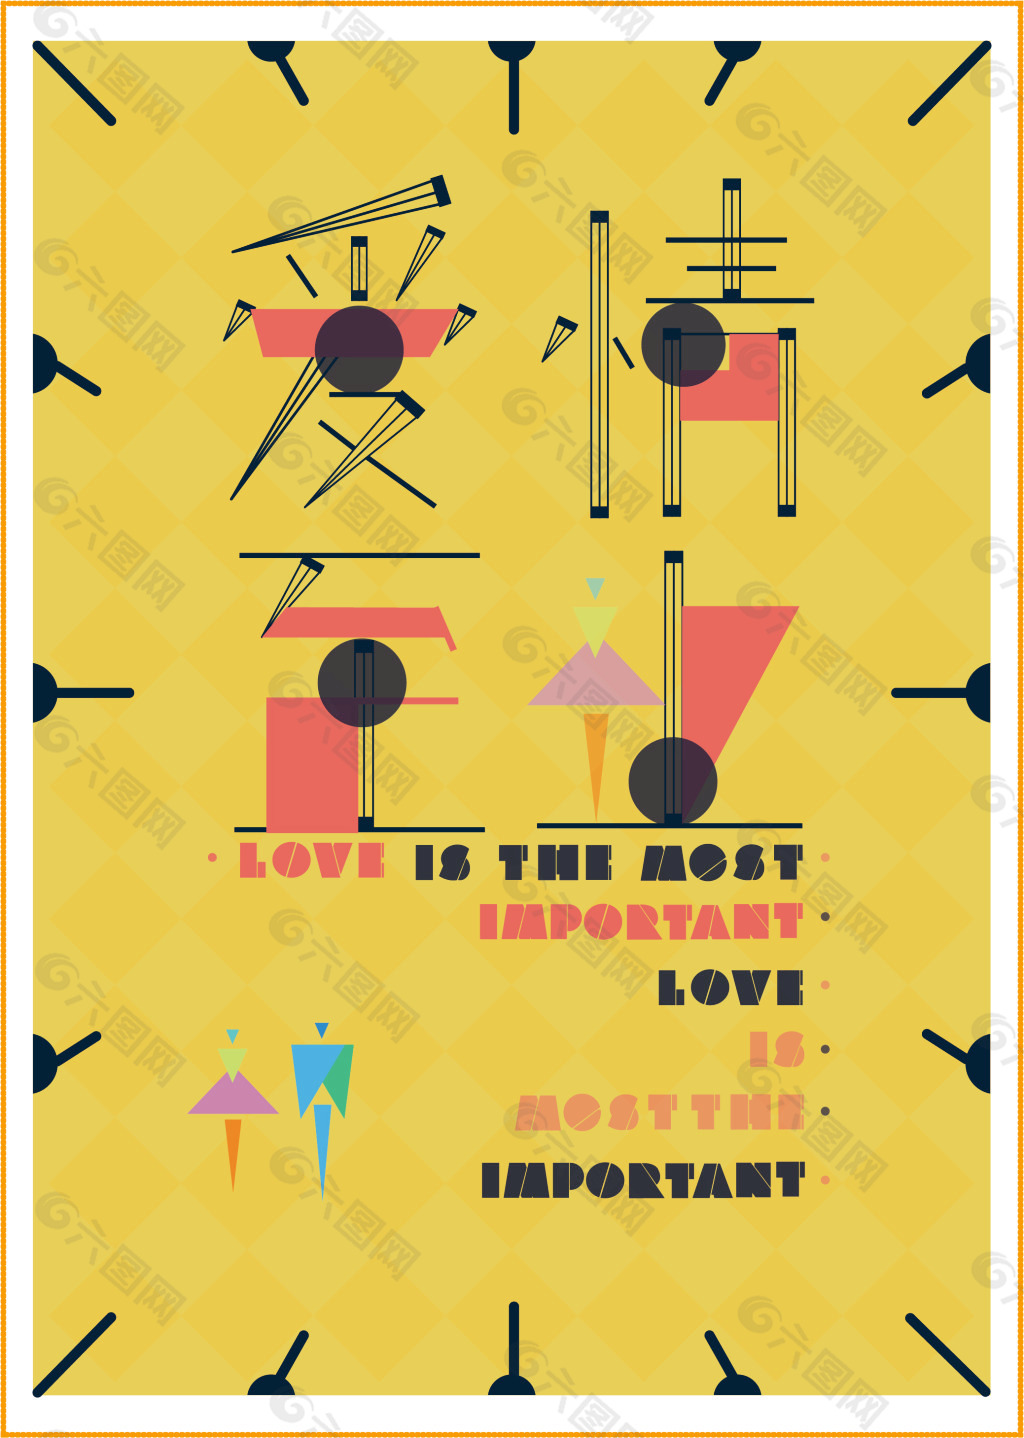 简约的海报形式，诠释爱情至上的真谛